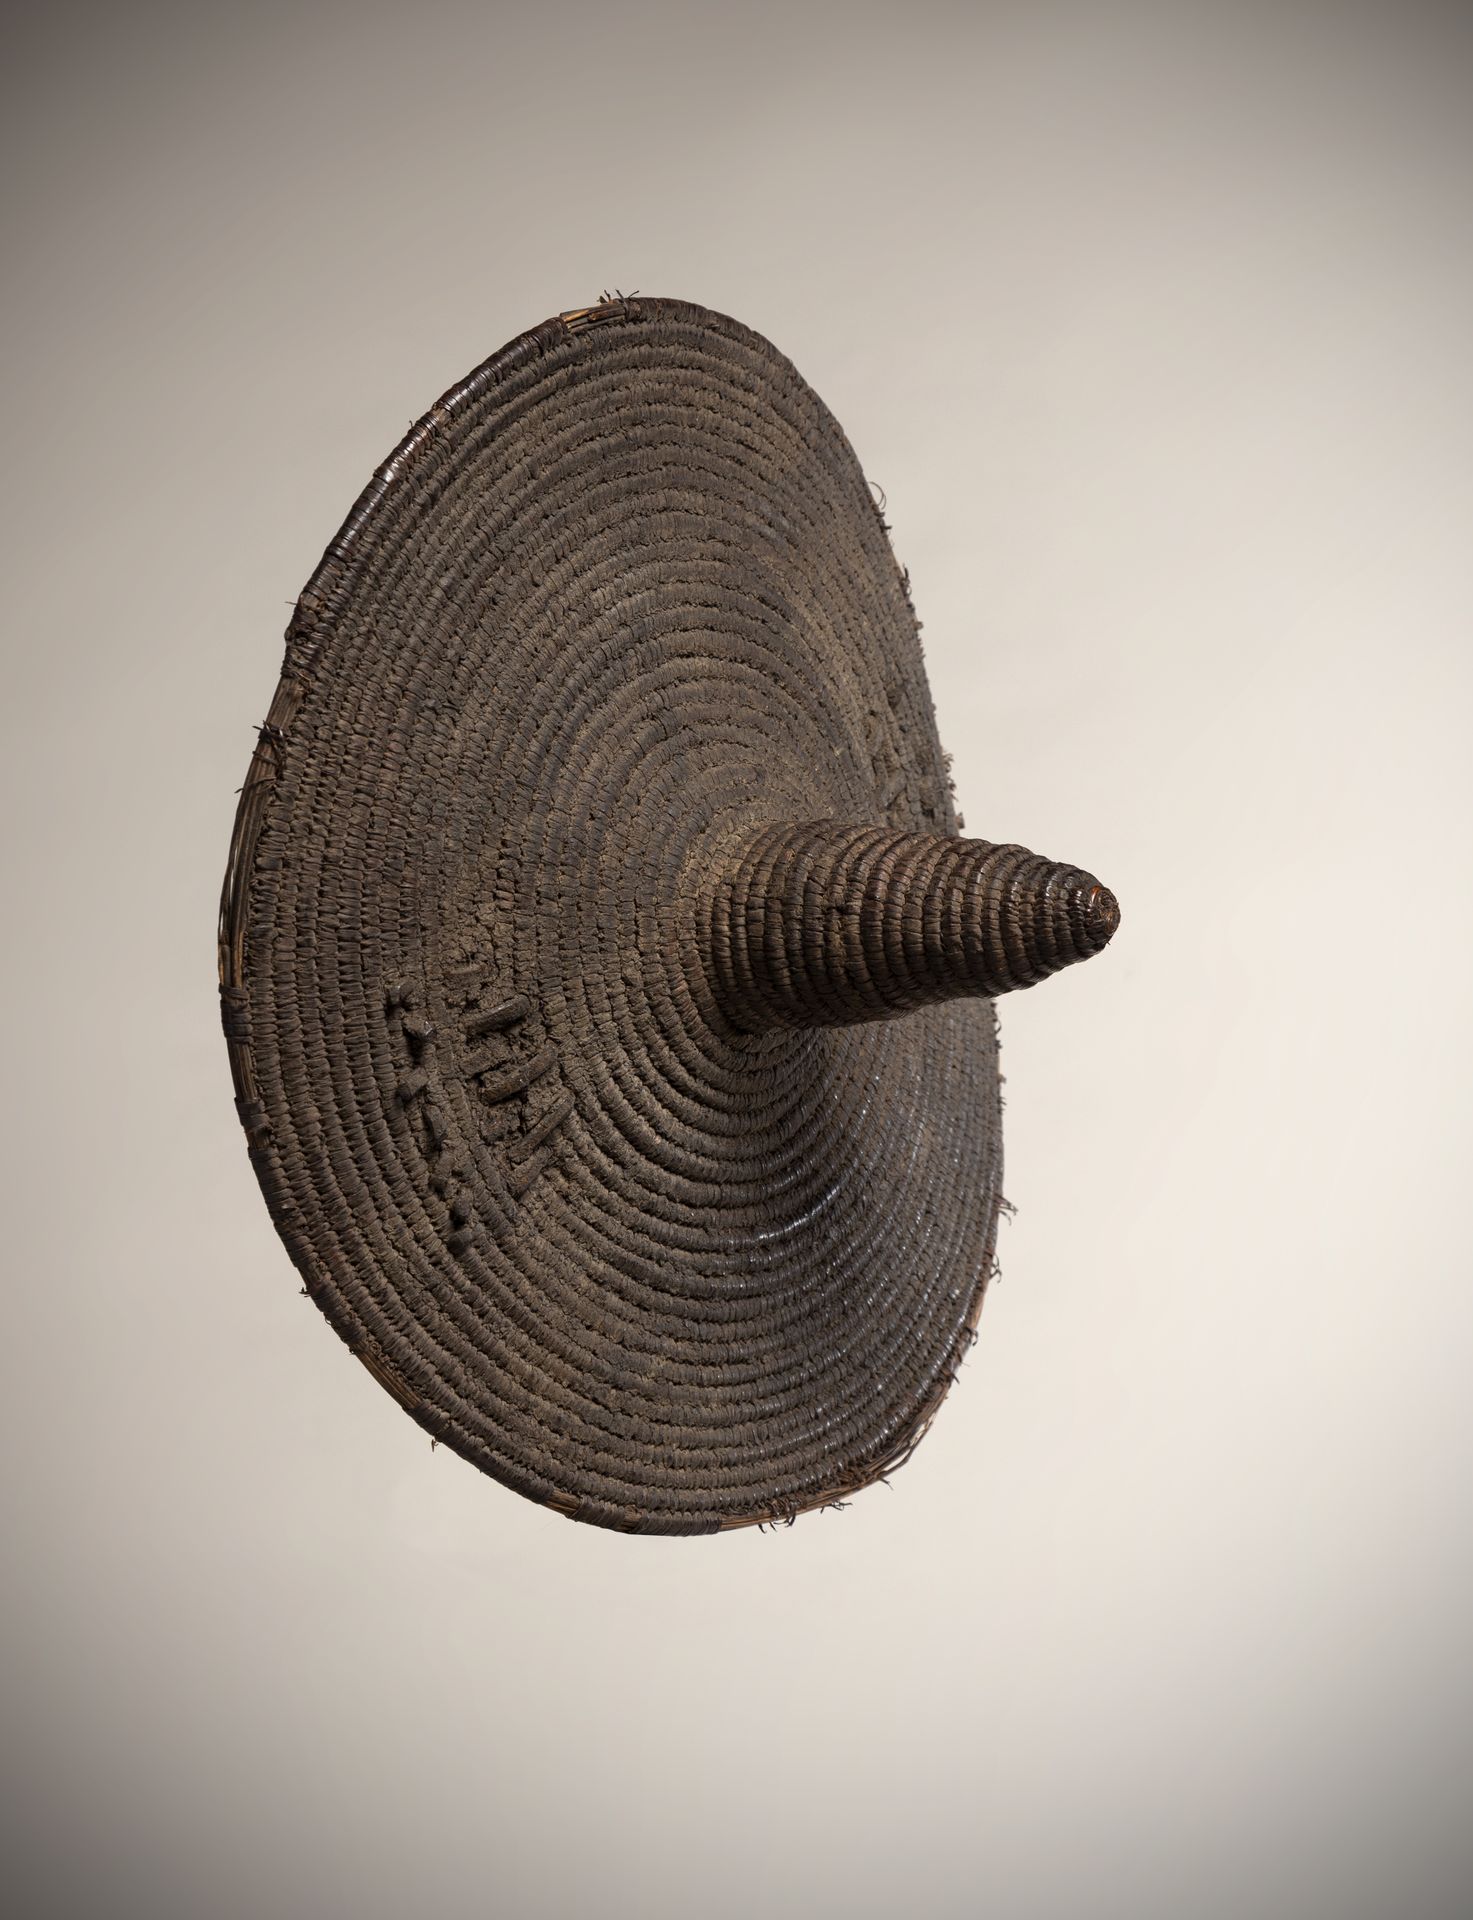 Null TAMBERMA / SOMBA (Benin)

Schild aus Korbgeflecht mit konischer Spitze und &hellip;